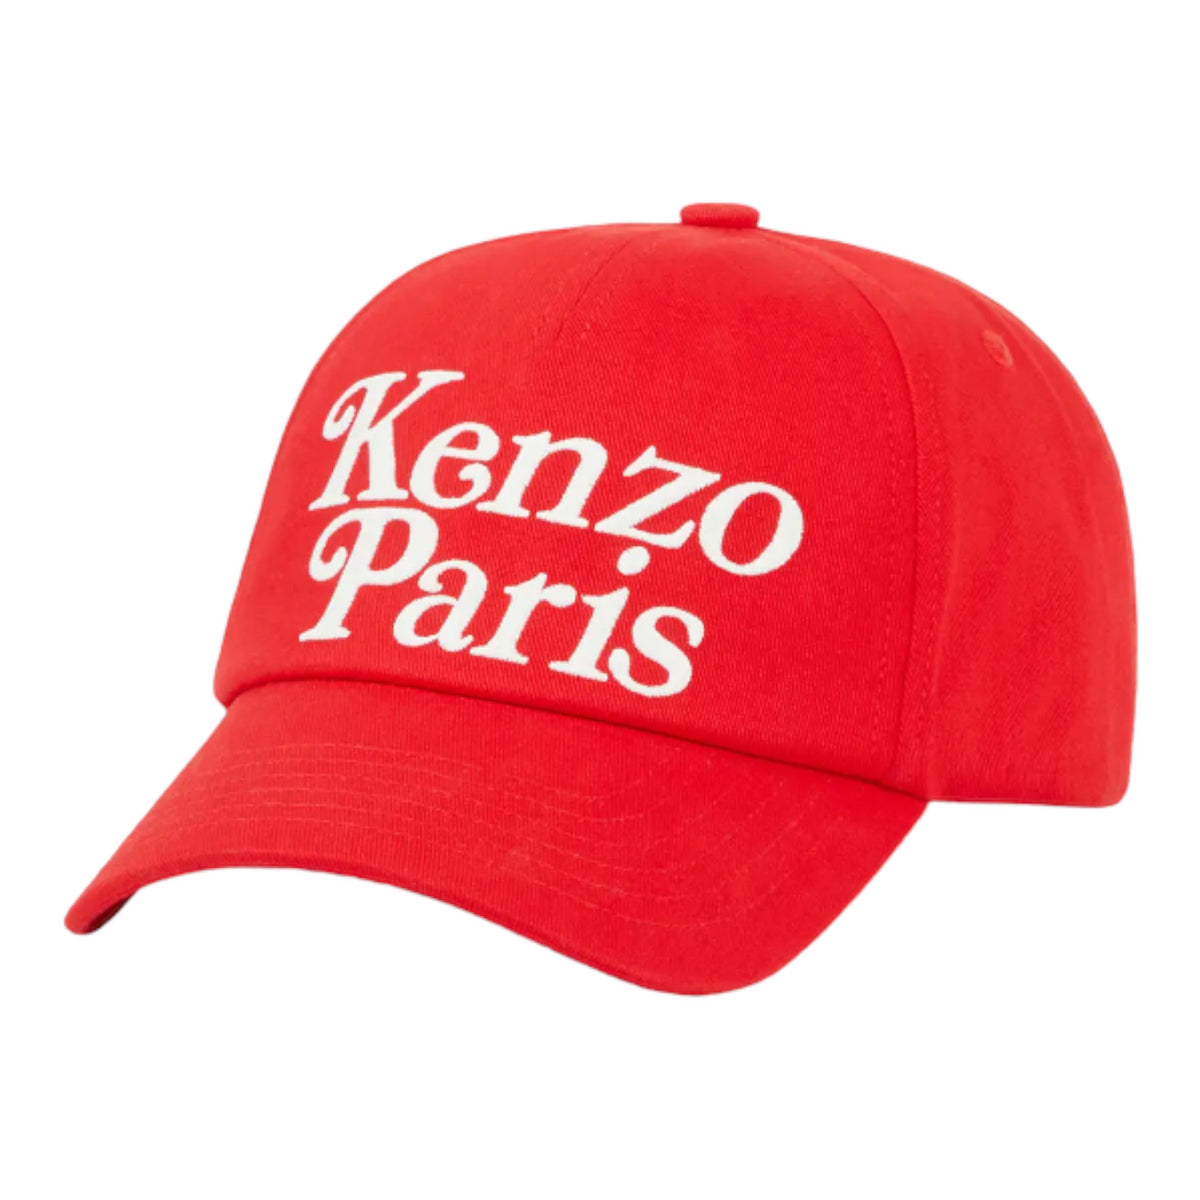 Kenzo by Verdy 'Utility' Cotton Cap